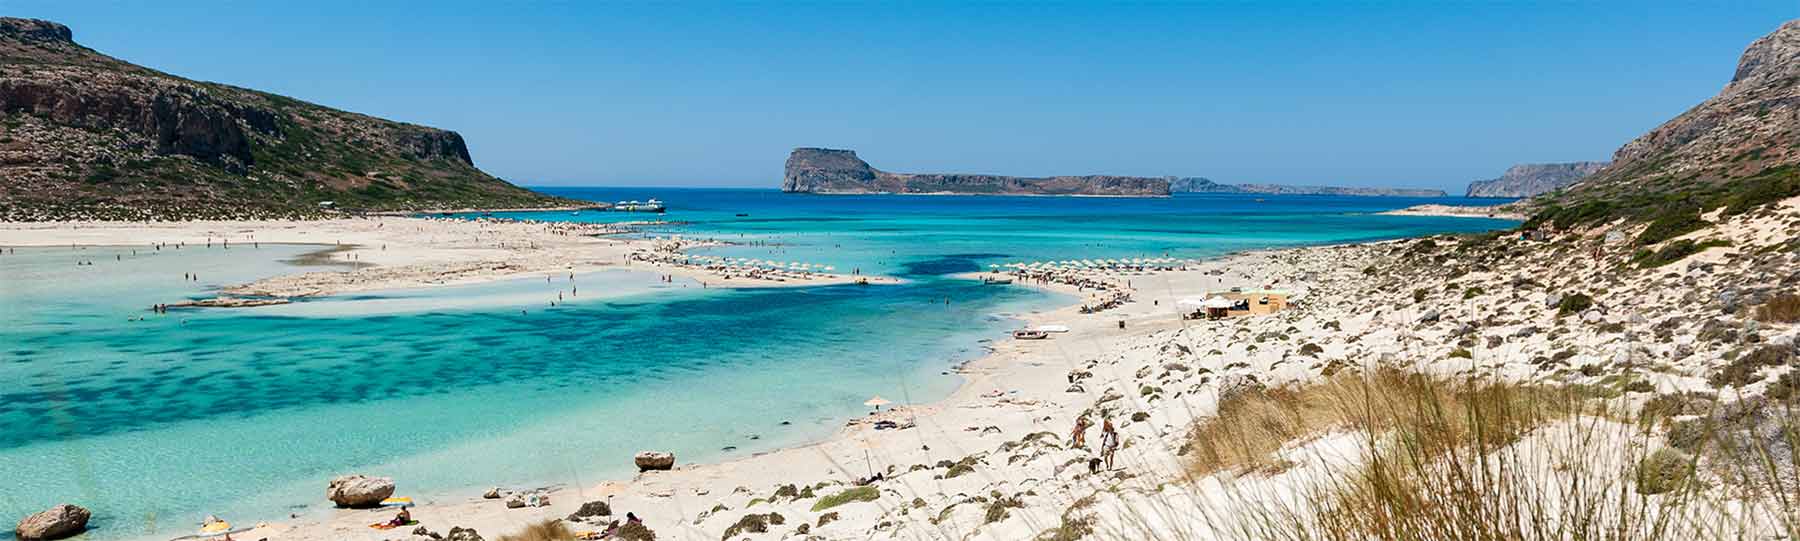 Die blaue Lagune von Balos auf Kreta